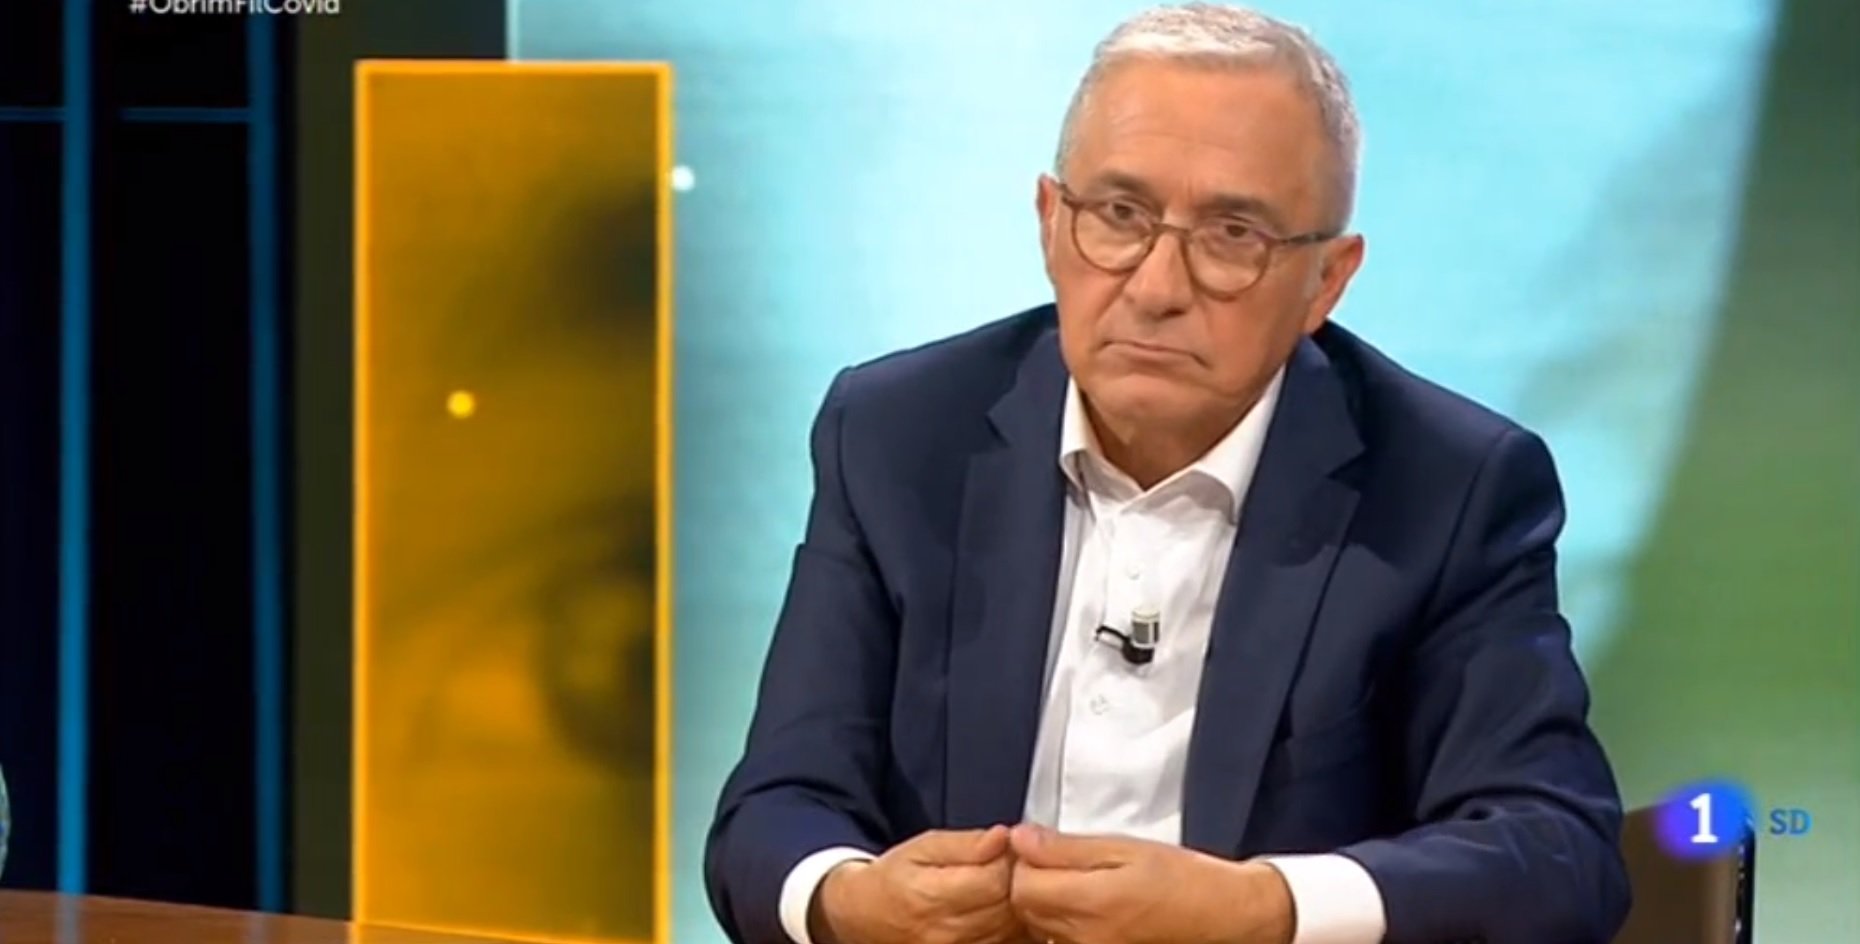 Sardà lidera la audiència, amenaza a TV3 y teme "Si nadie lo evita, seguiré"